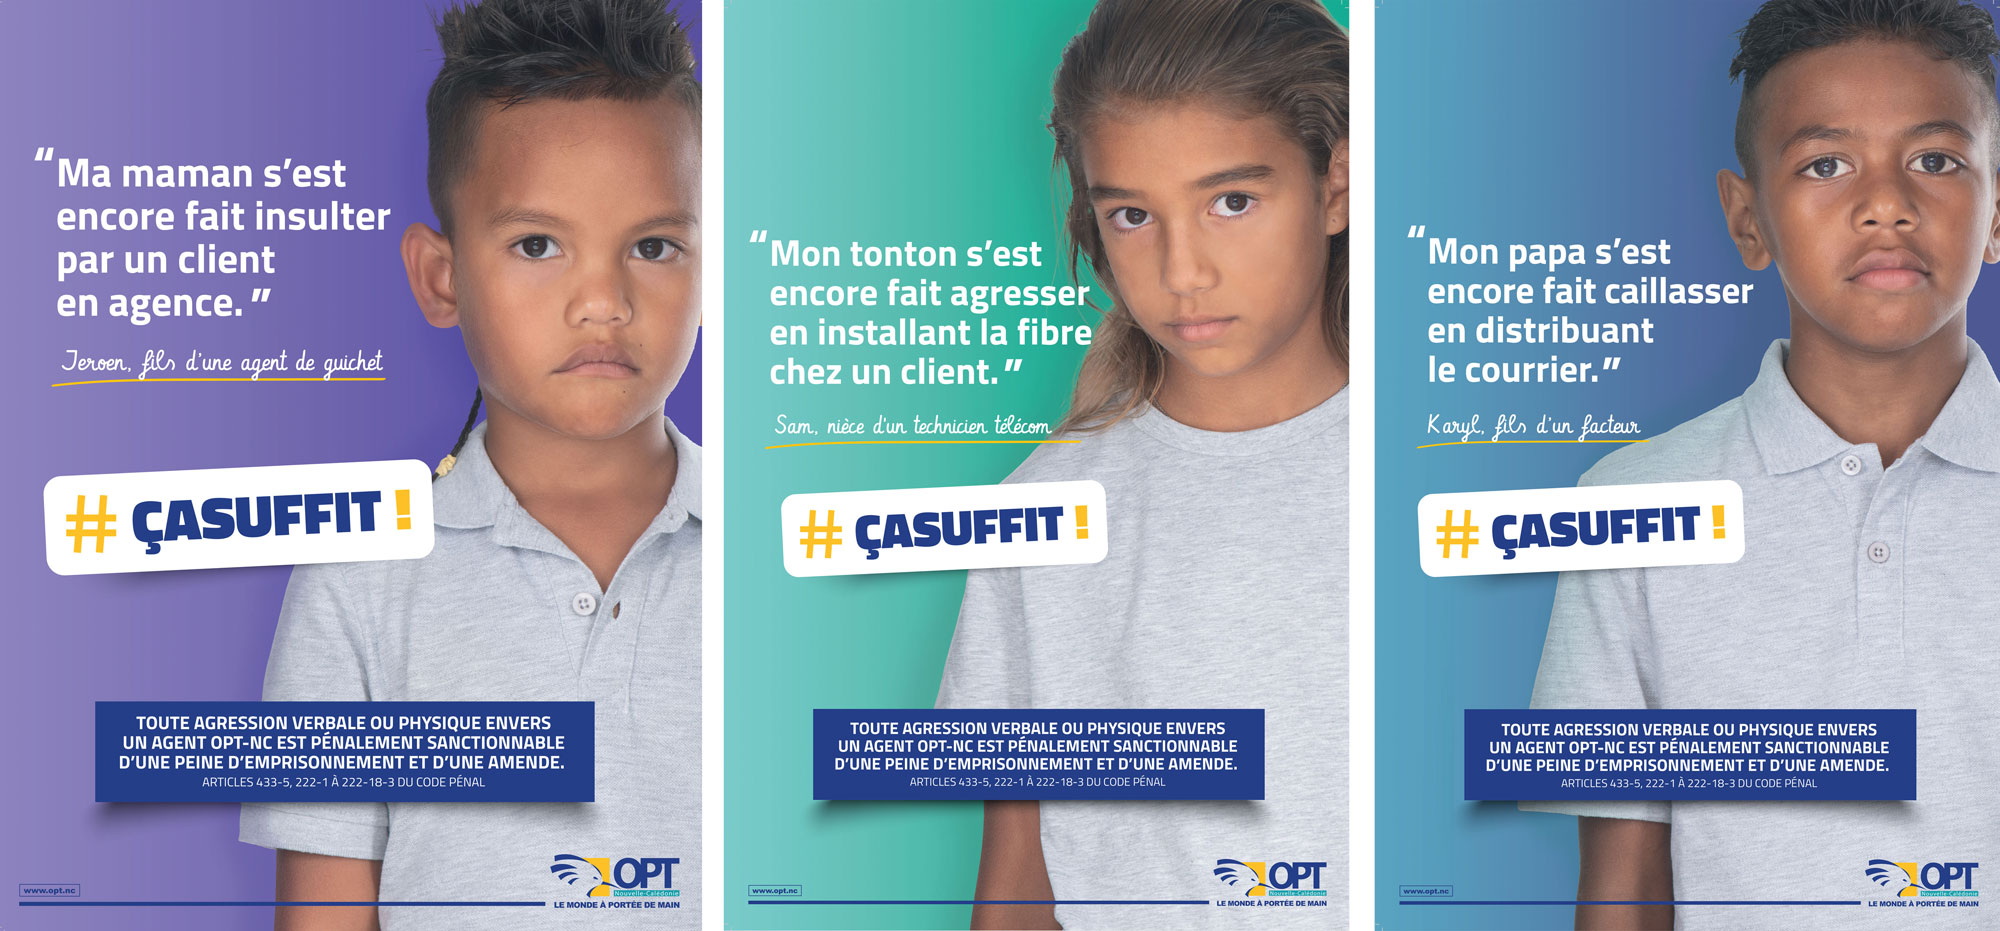 affiches de la campagne OPT de sensibilisation pour lutter contre les incivilités